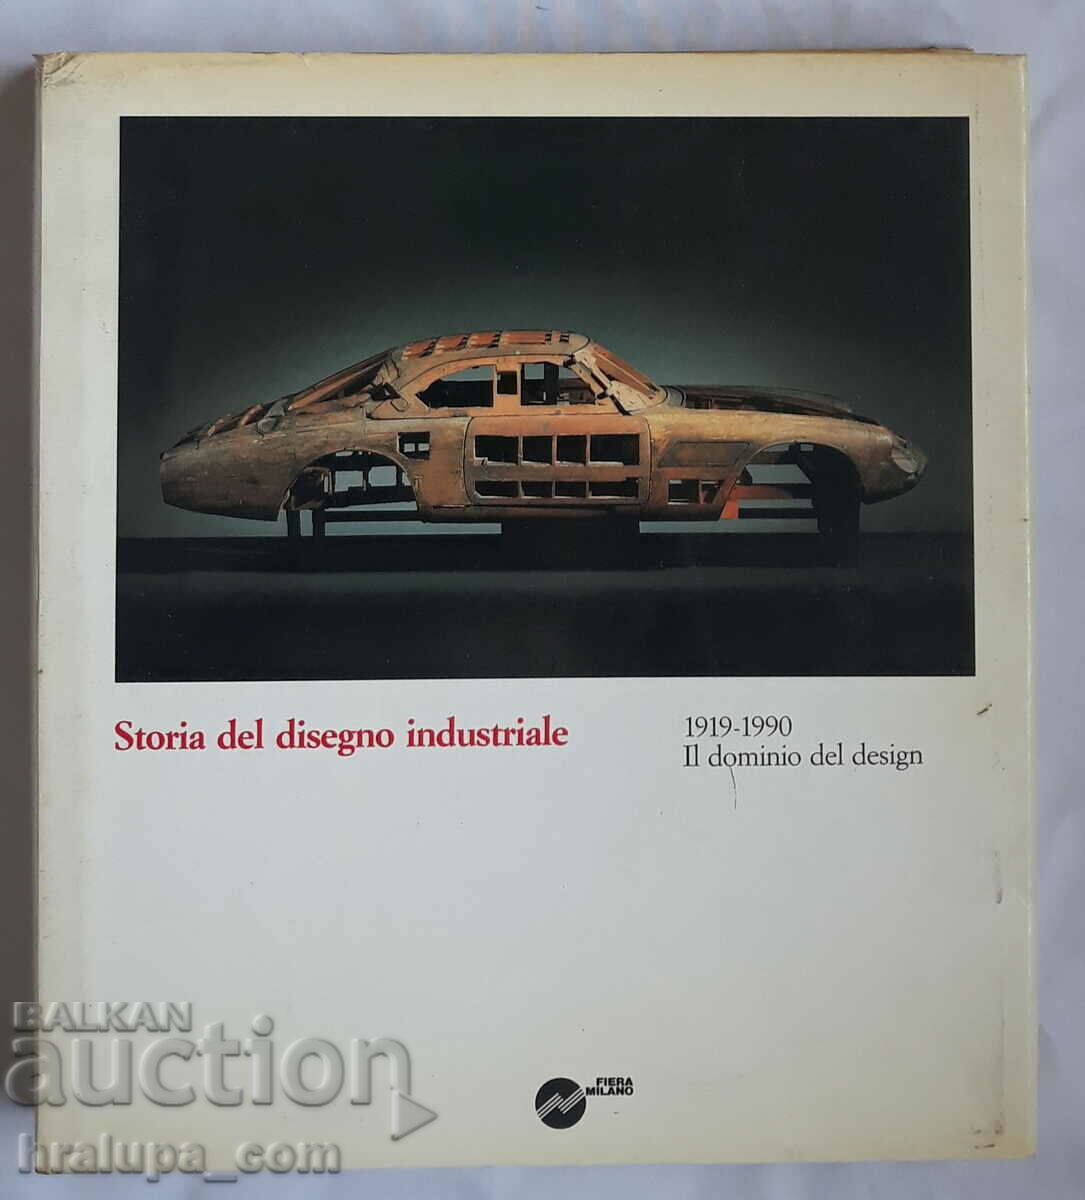 The book Storia del disegno industriale 1919-1990